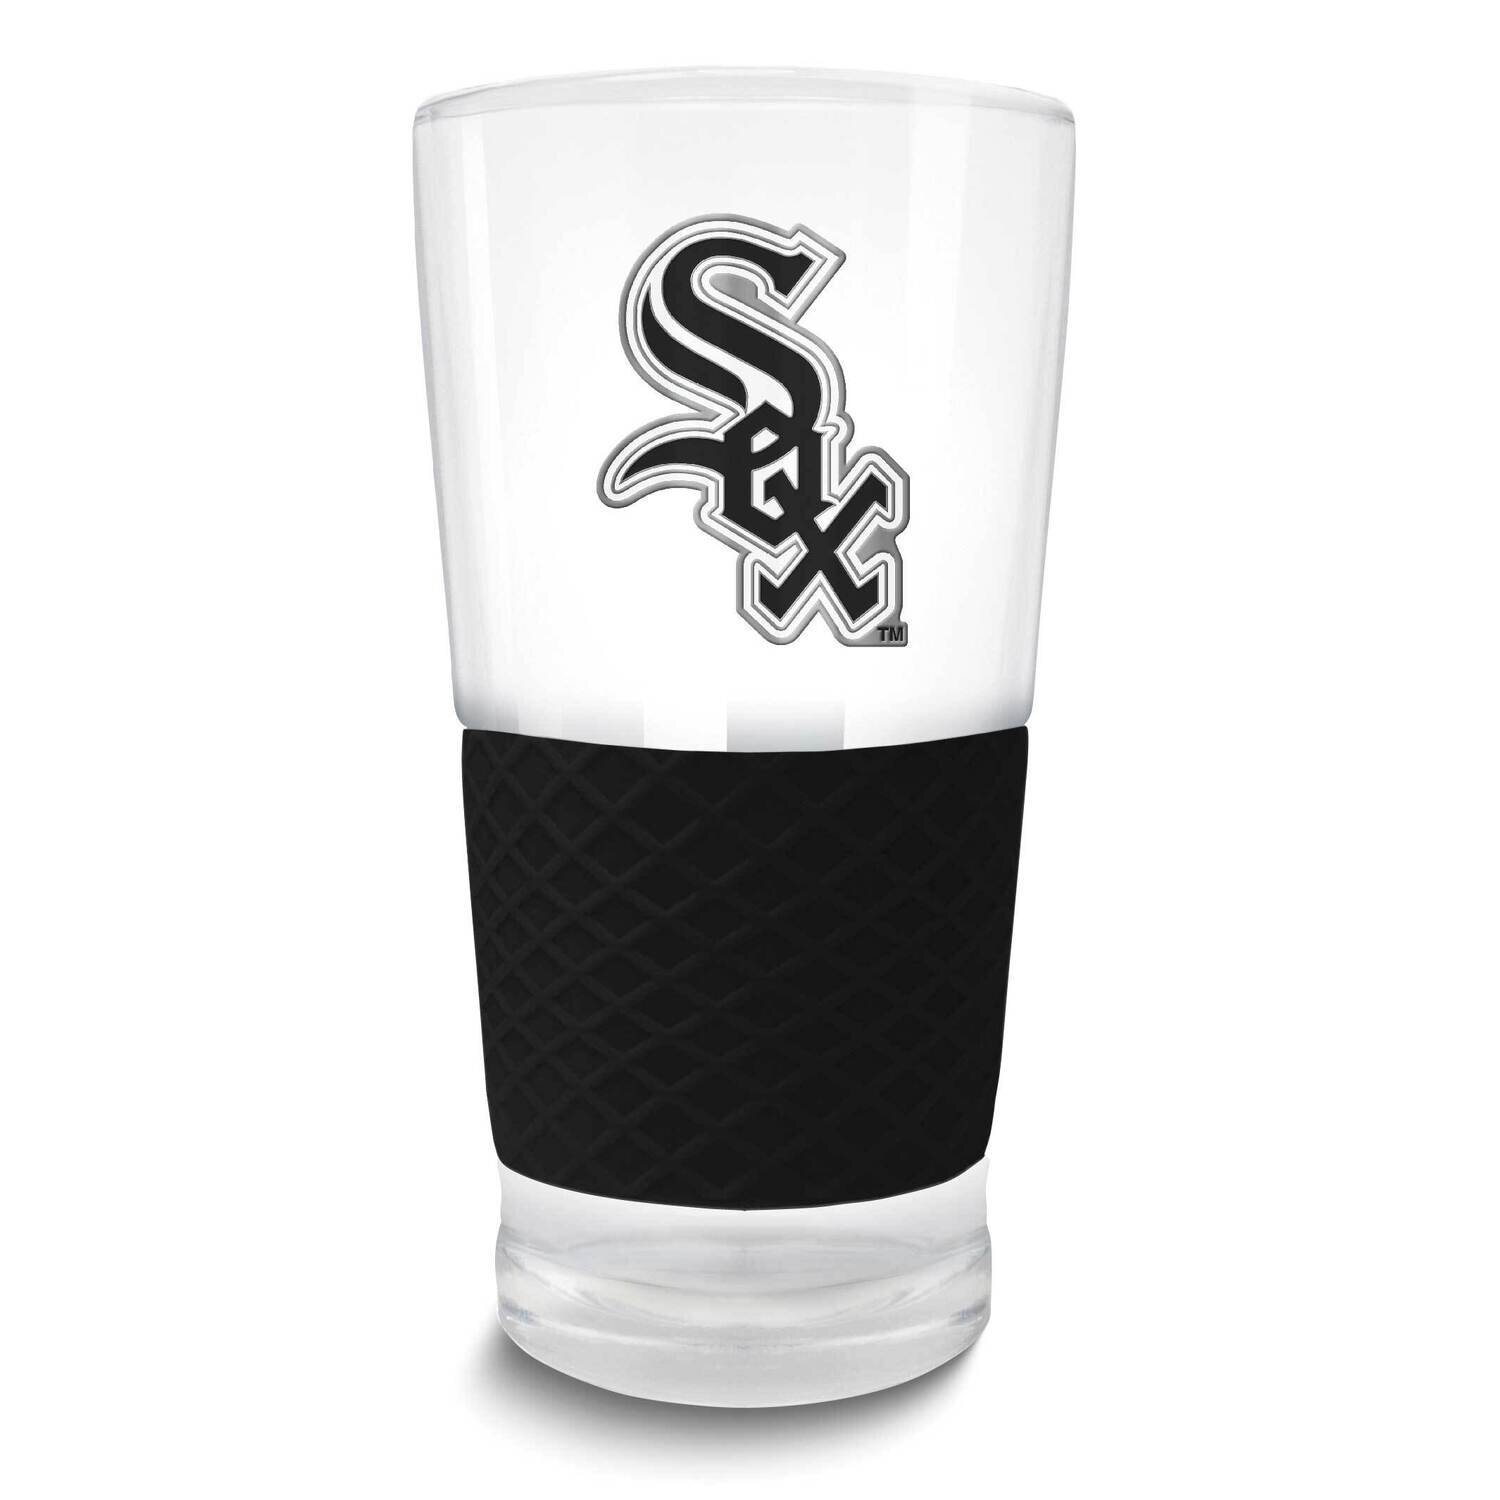 MLB Chicago White Sox Score Pint Glass GM26127-WHI